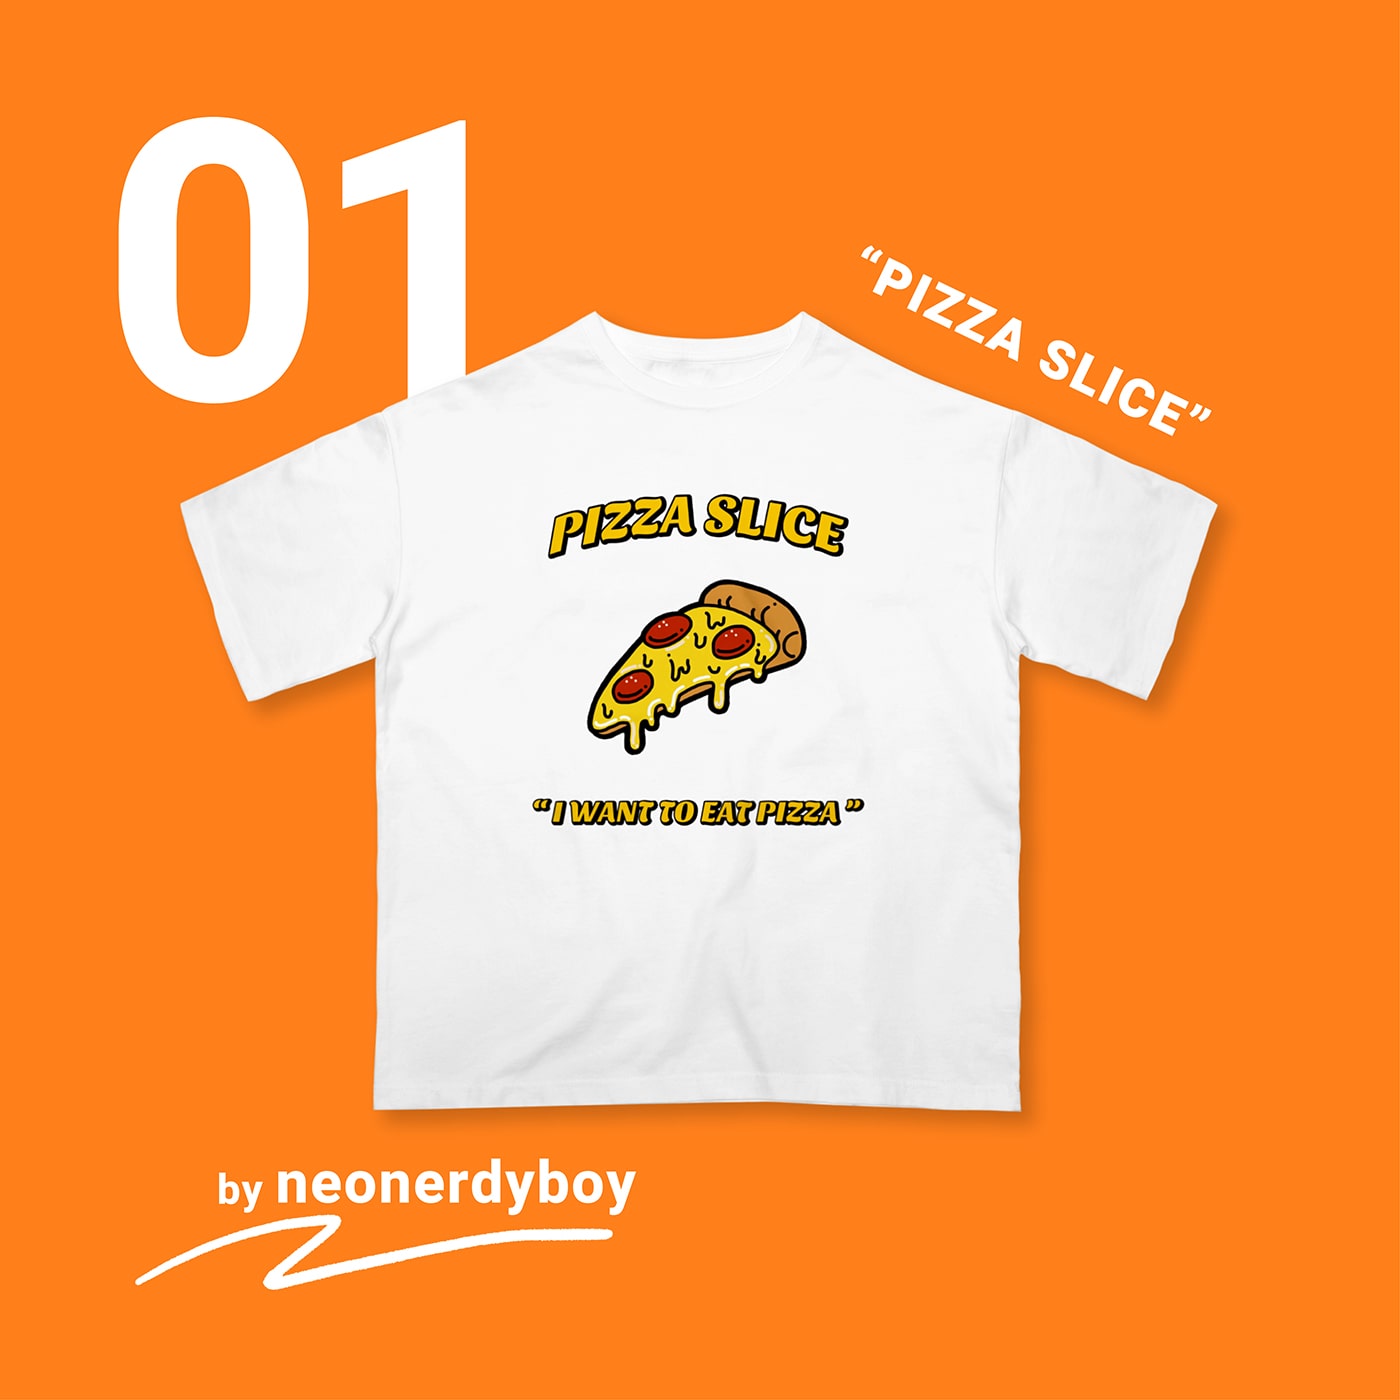 01 “PIZZA SLICE” by neonerdyboy